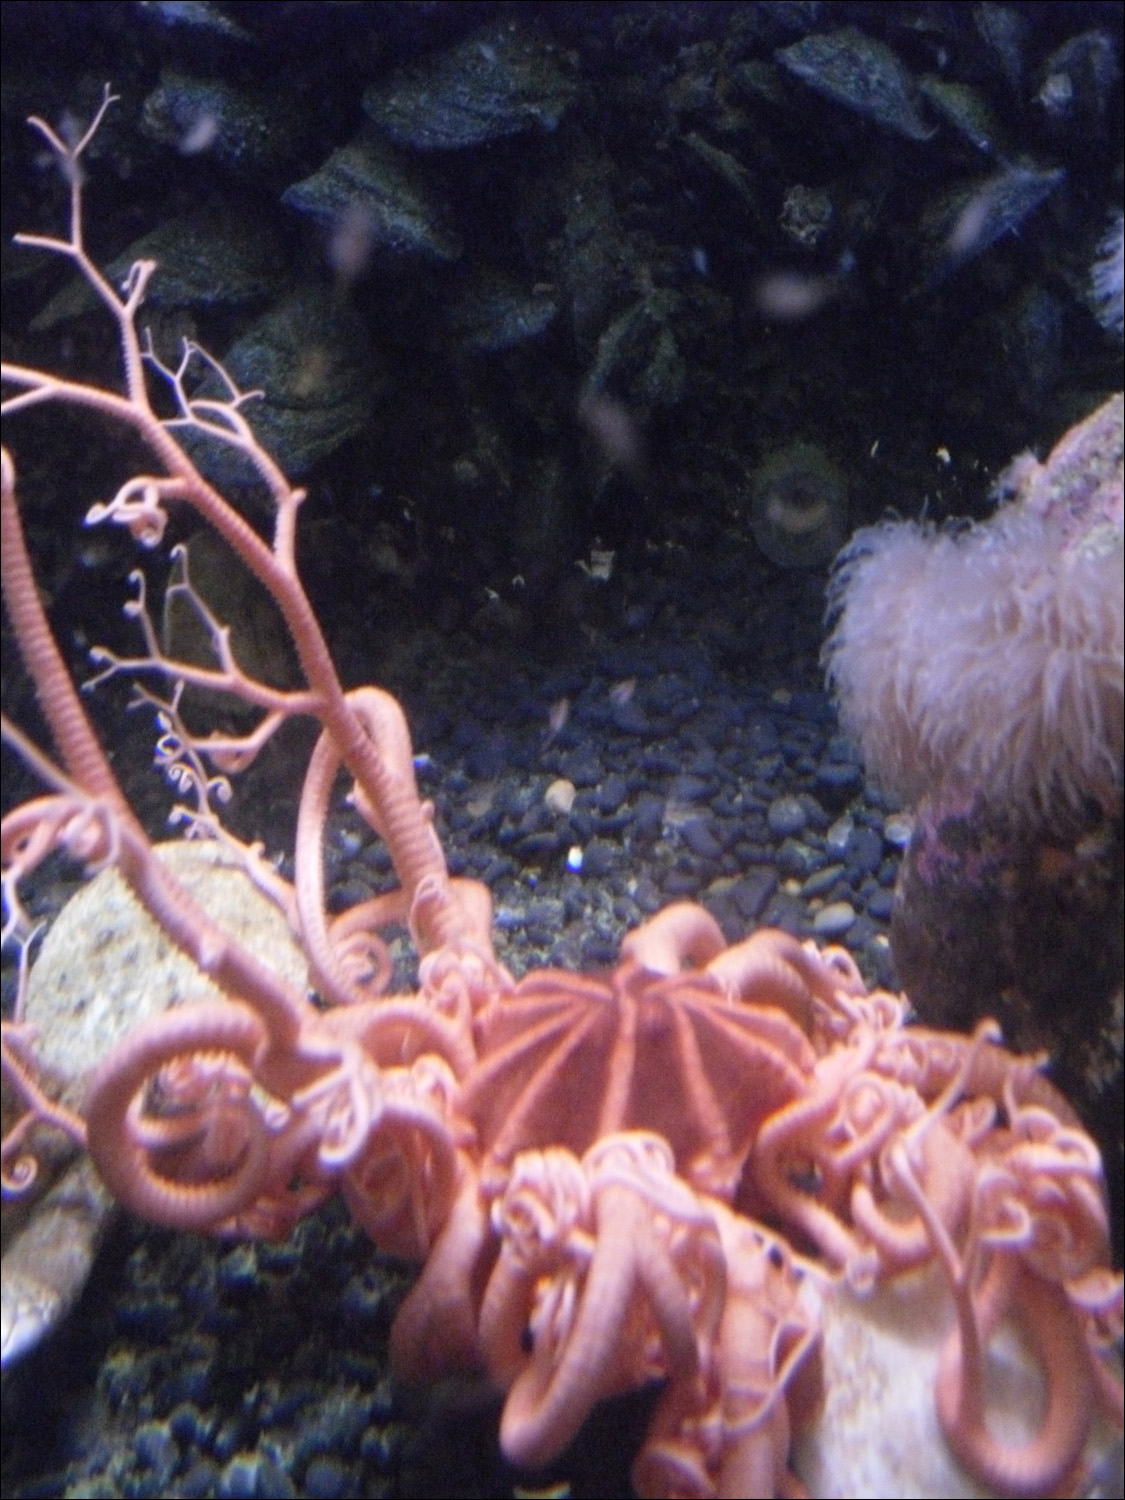 Newport, OR- Oregon Coast Aquarium